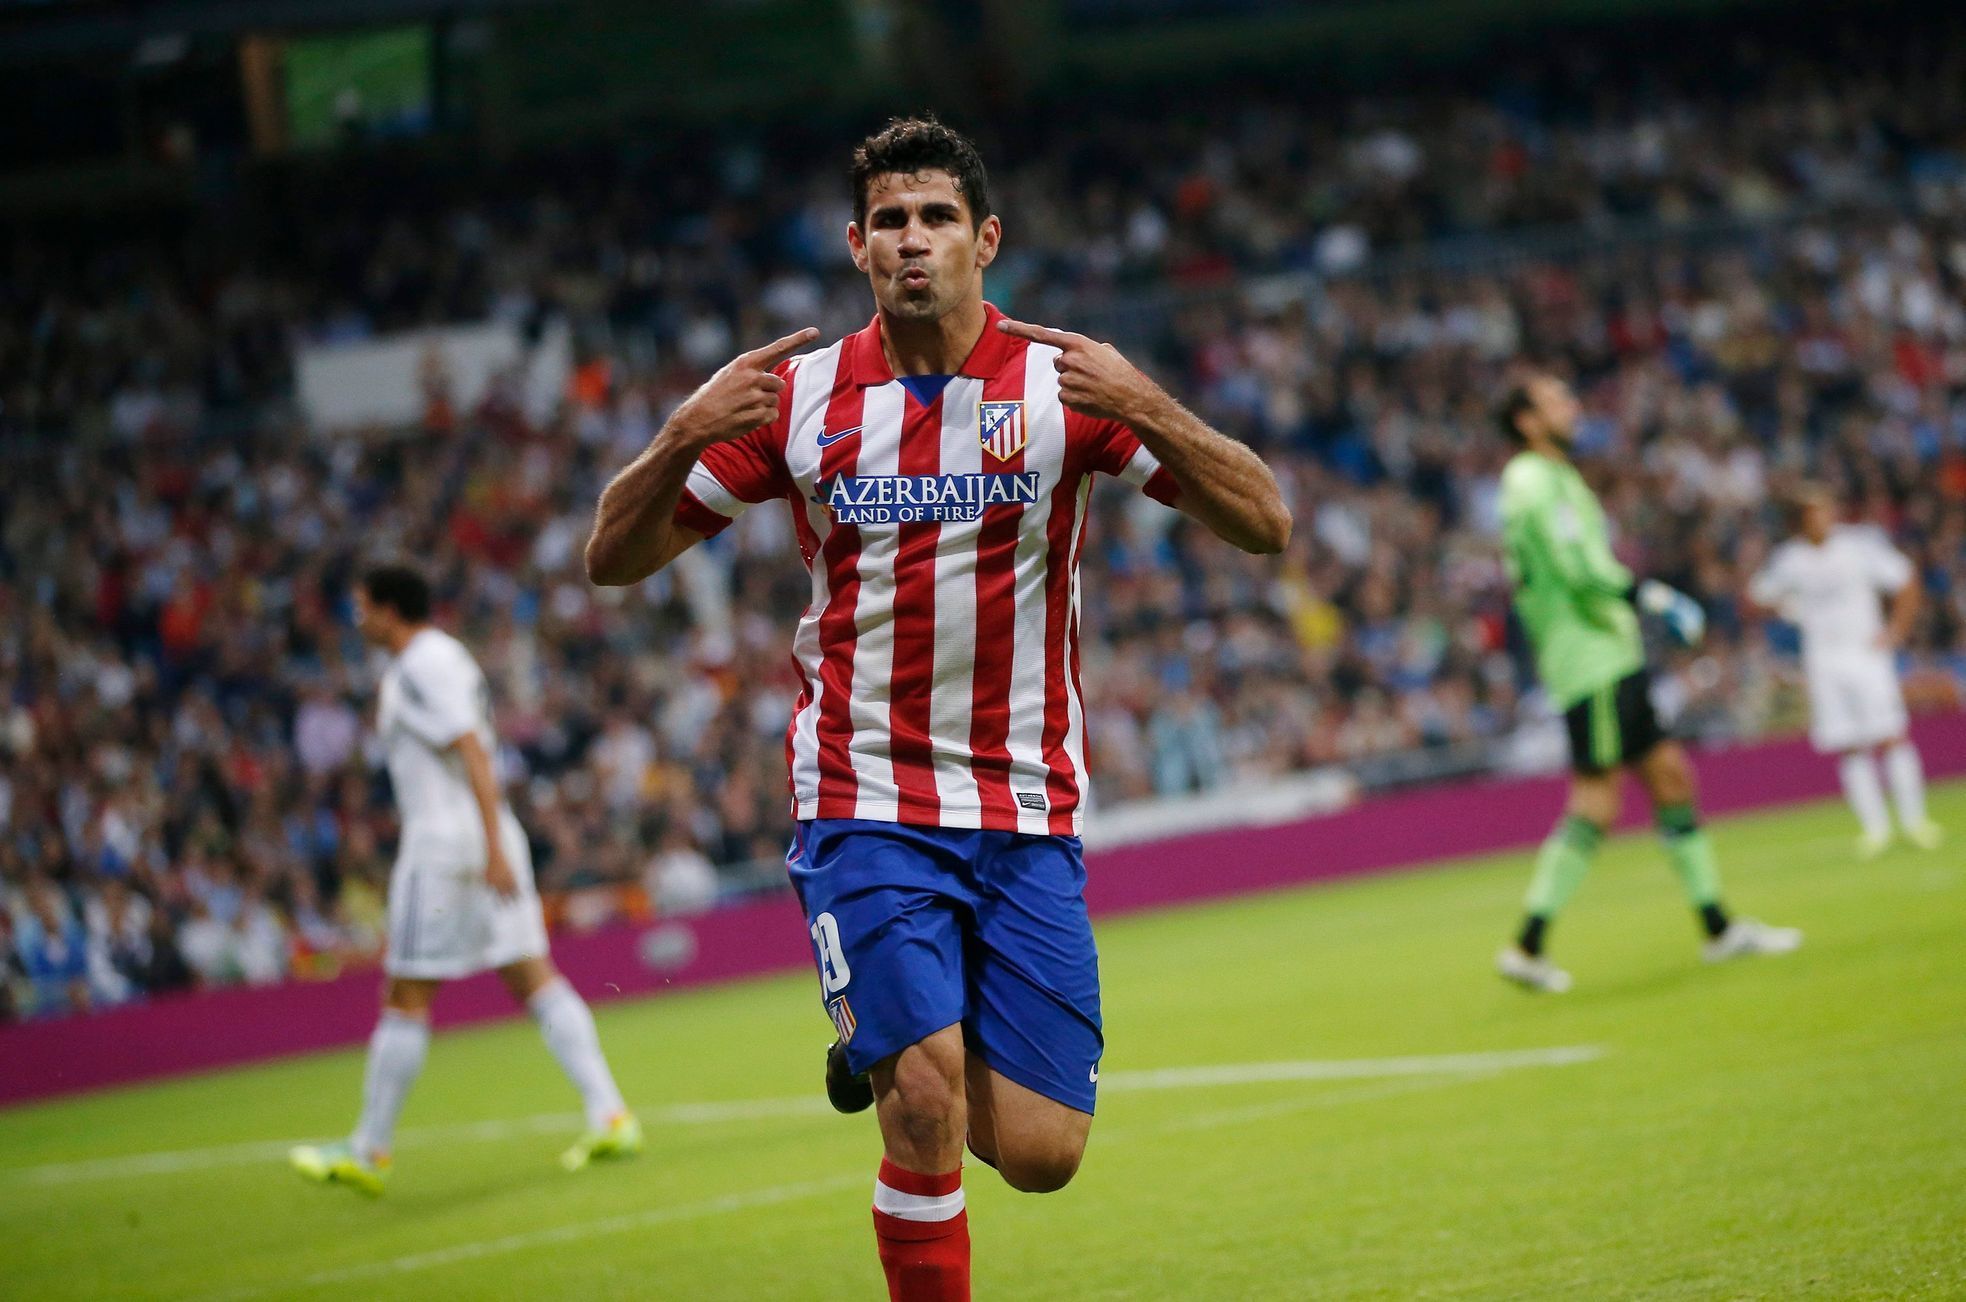 Diego Costa slaví gól do sítě Realu Madrid